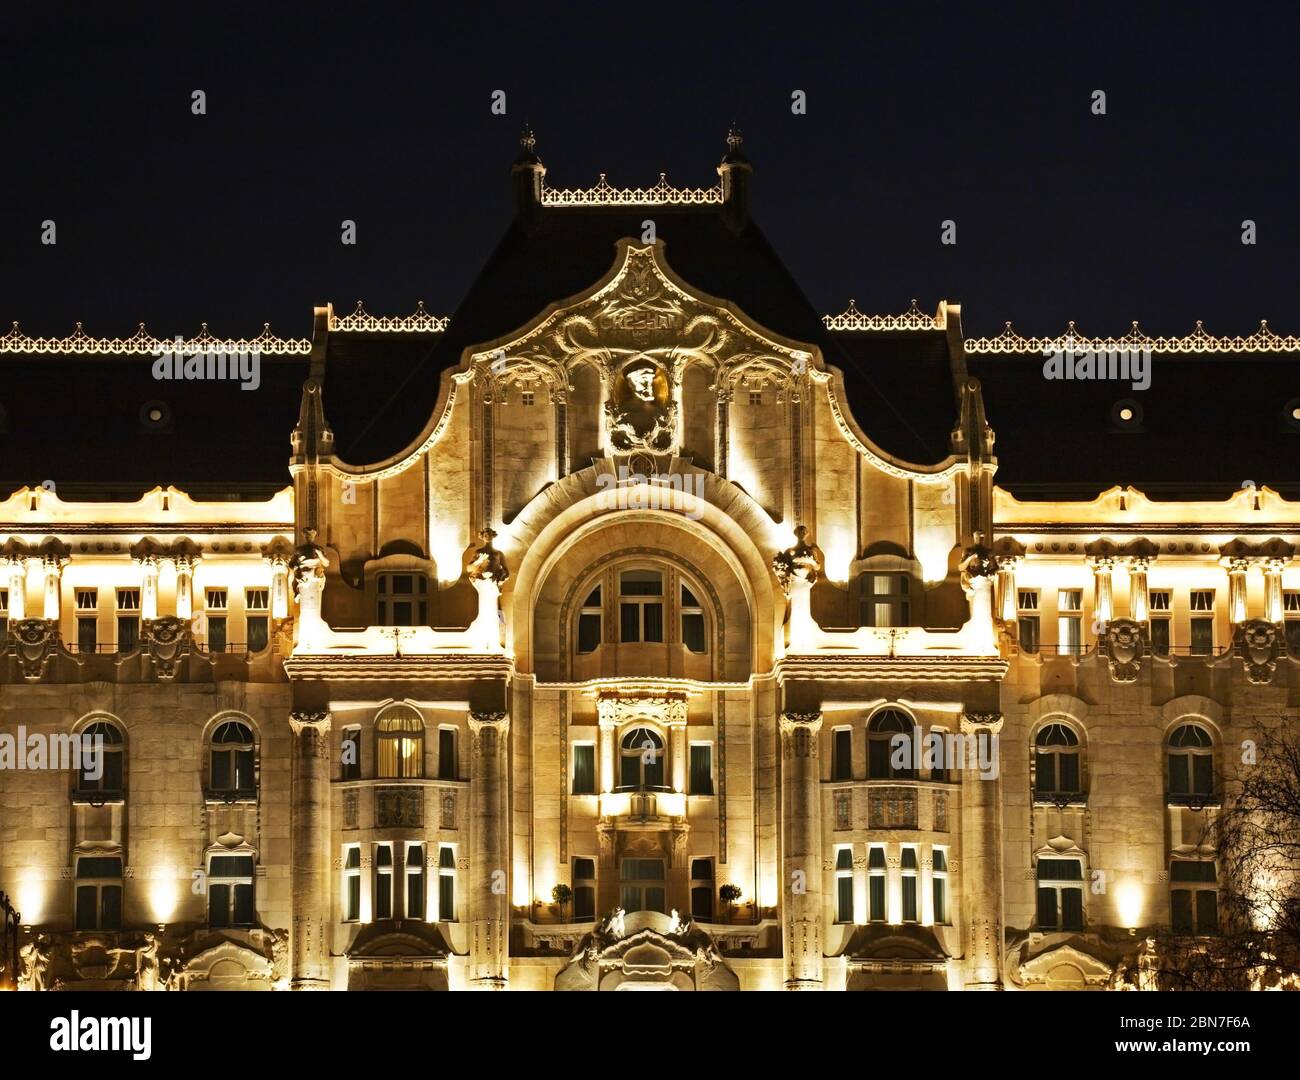 Gresham Palace in Budapest. Hungary Stock Photo